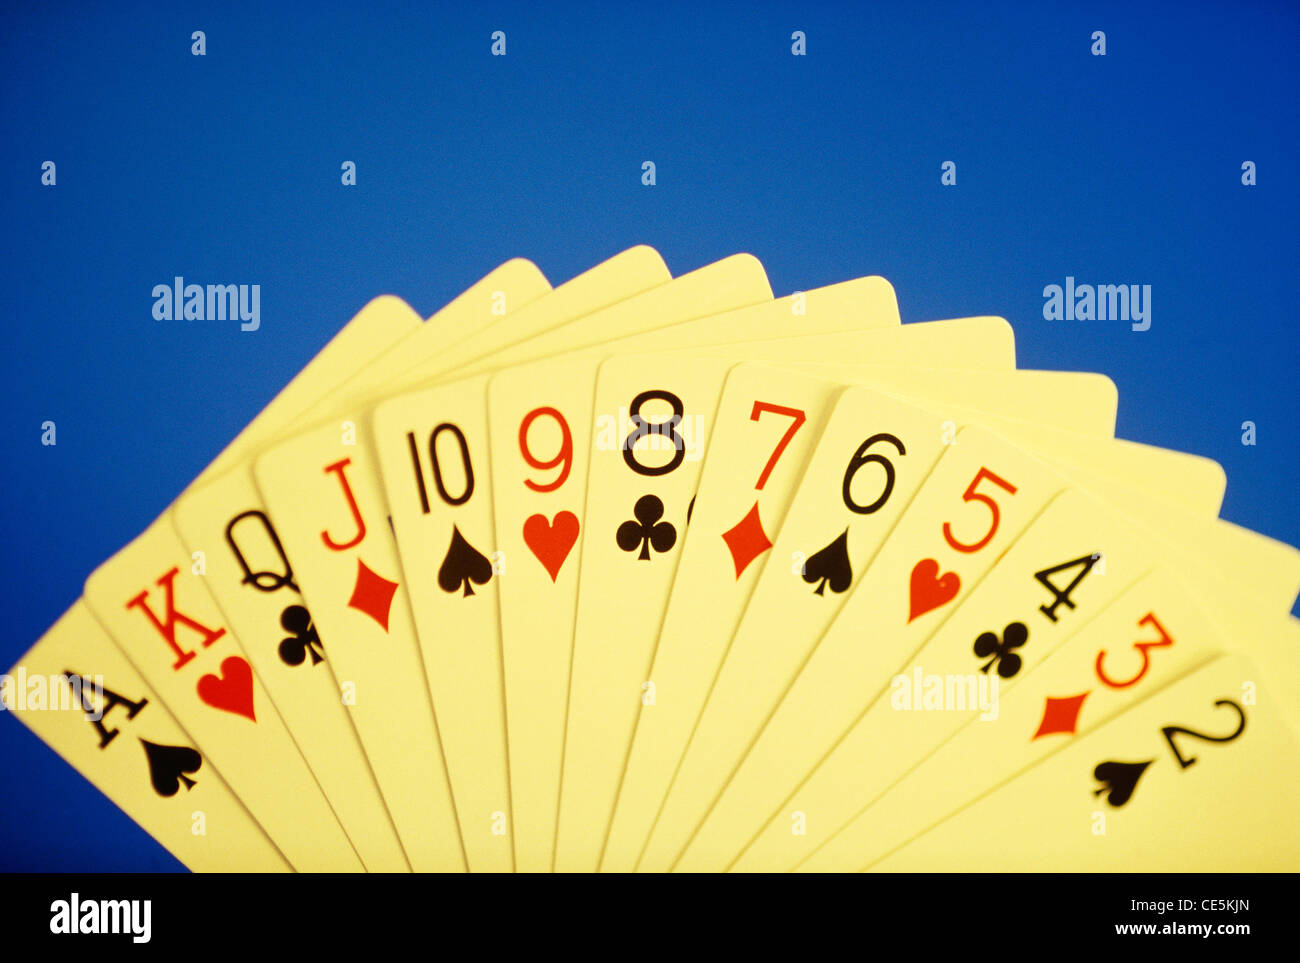 Les cartes à jouer sur fond bleu main pleine 2 3 4 5 6 7 8 9 10 jack reine roi ace Banque D'Images